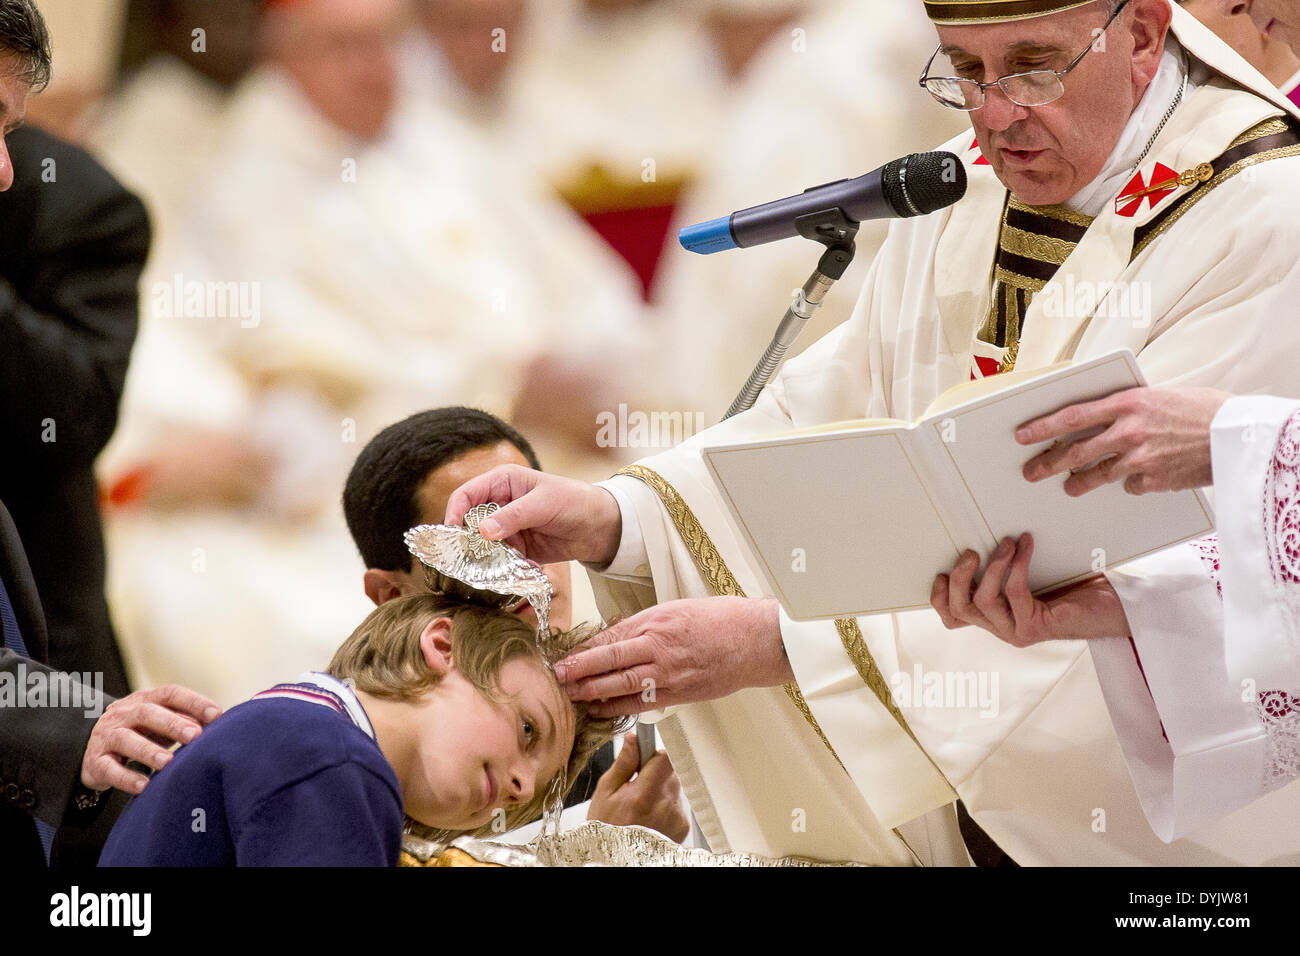 Vatikan Vatikan 19. April 2014 Papst Francis Feier der Osternacht in der Heiligen Nacht Francis Pope tauft ein Kind Credit: wirklich Easy Star/Alamy Live News Stockfoto